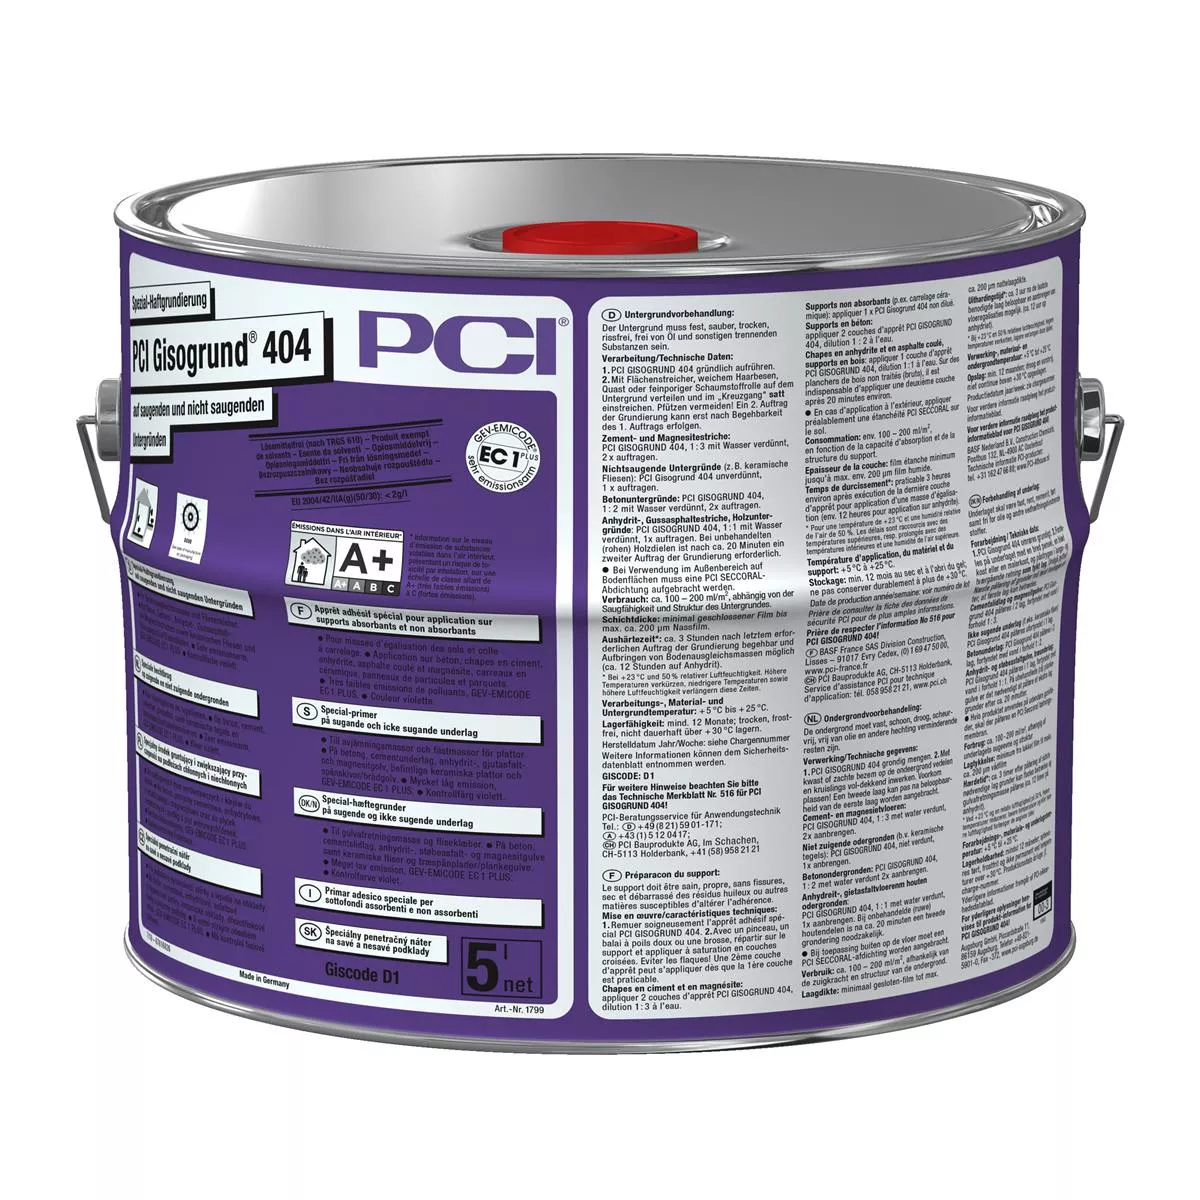 PCI Gisogrund 404 imprimación especial de adherencia violeta 5L